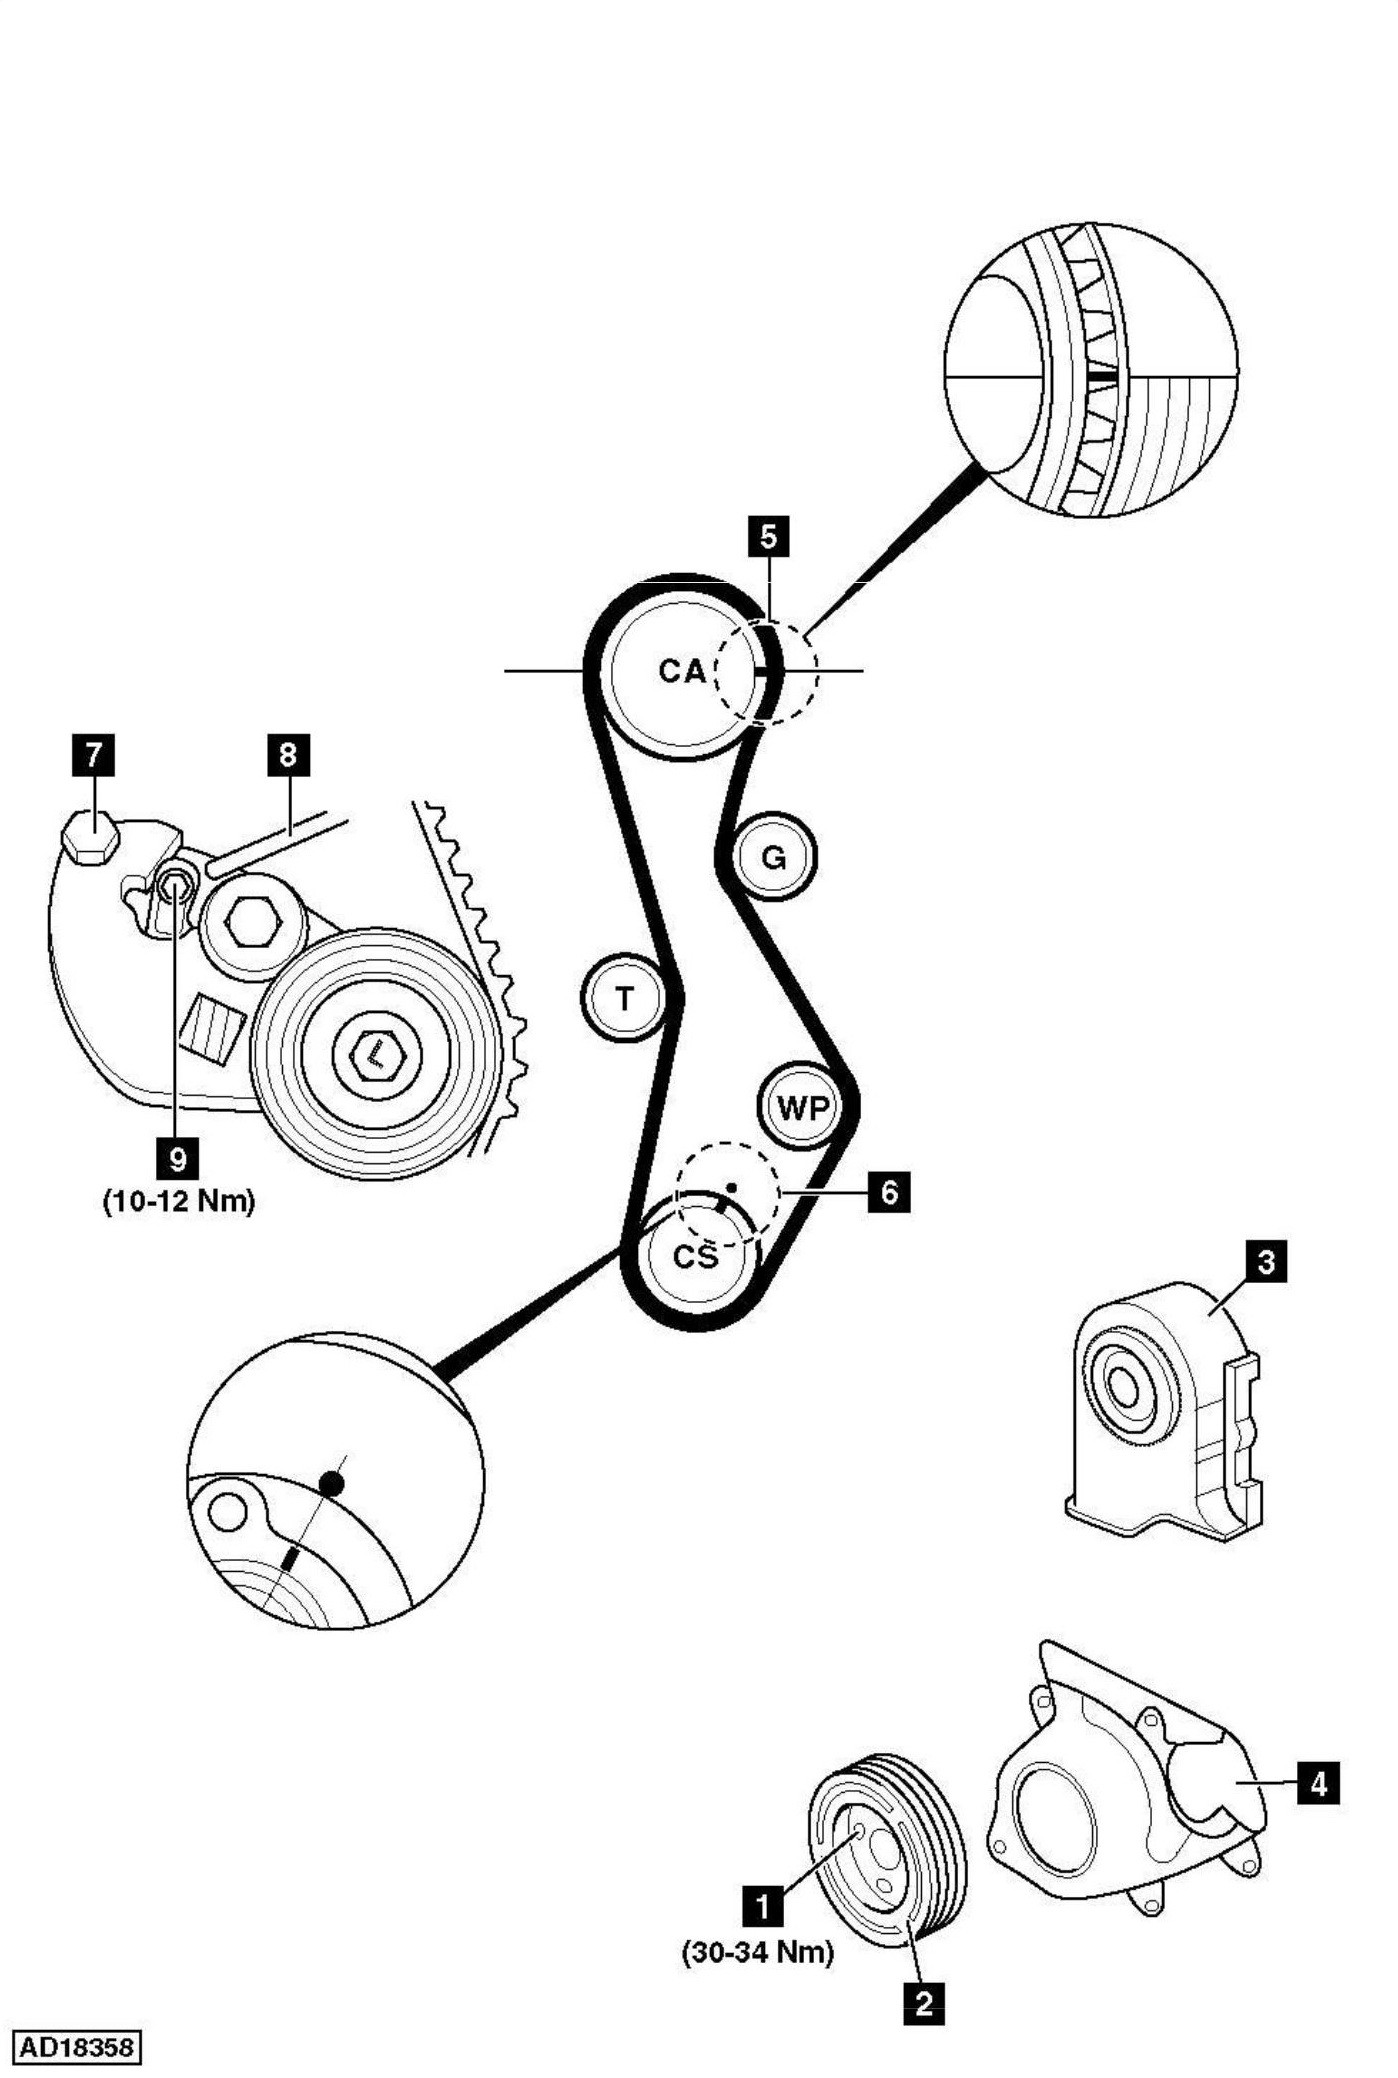 Diesel Engine Valve Timing Diagram How to Replace Timing Belt Hyundai Santa Fe 2 0d Crdi 2002 Of Diesel Engine Valve Timing Diagram